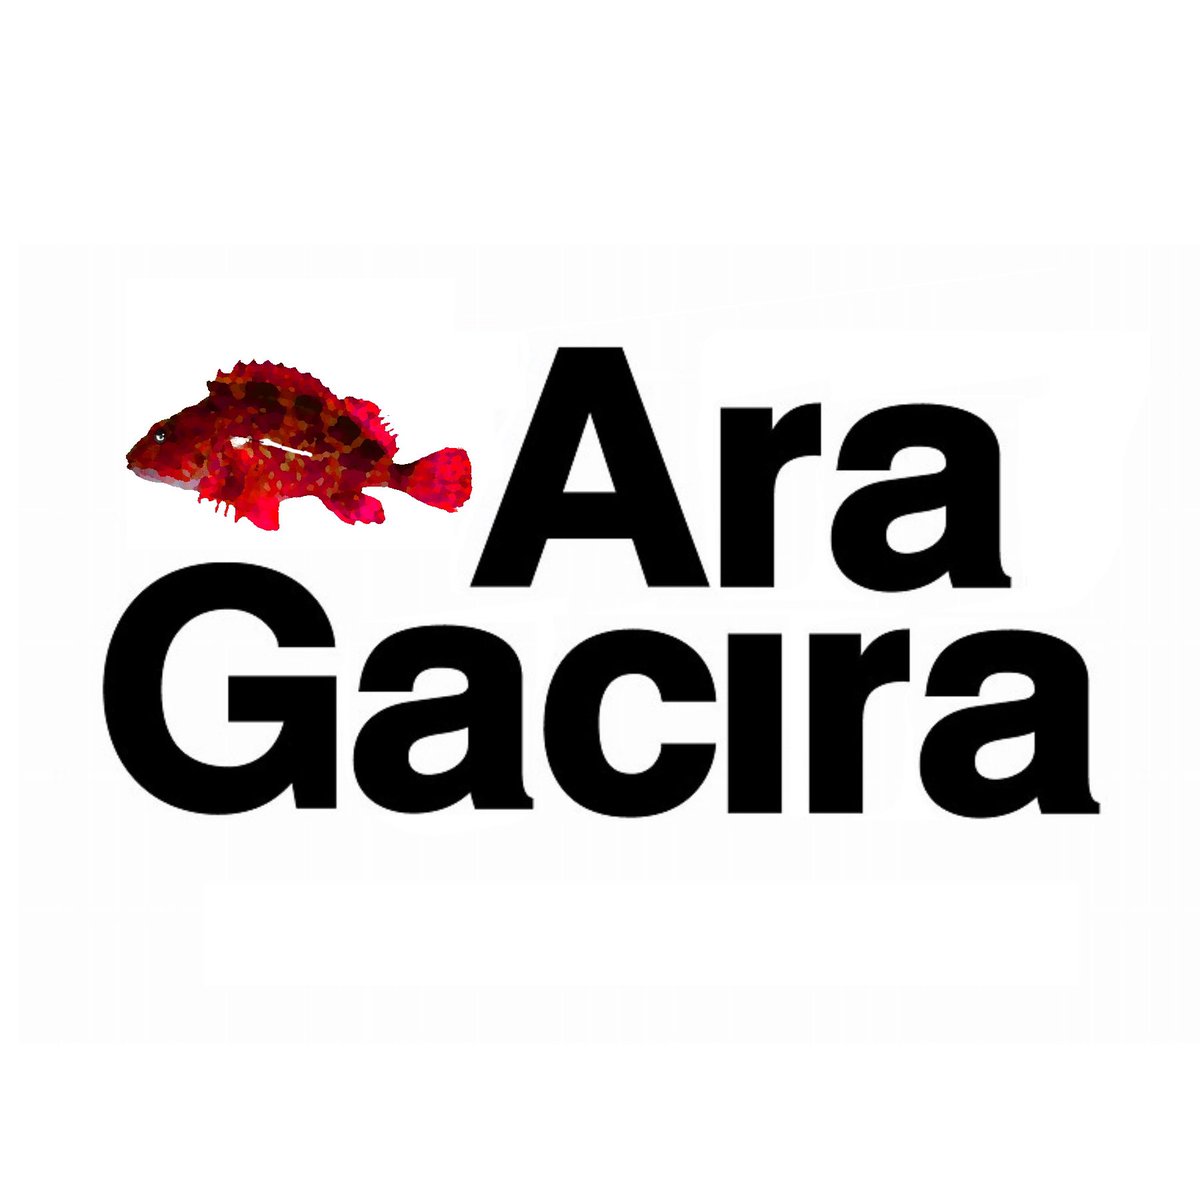 アラガシラのロゴつくってみた

 #abugarcia
 #アブガルシア
 #釣り